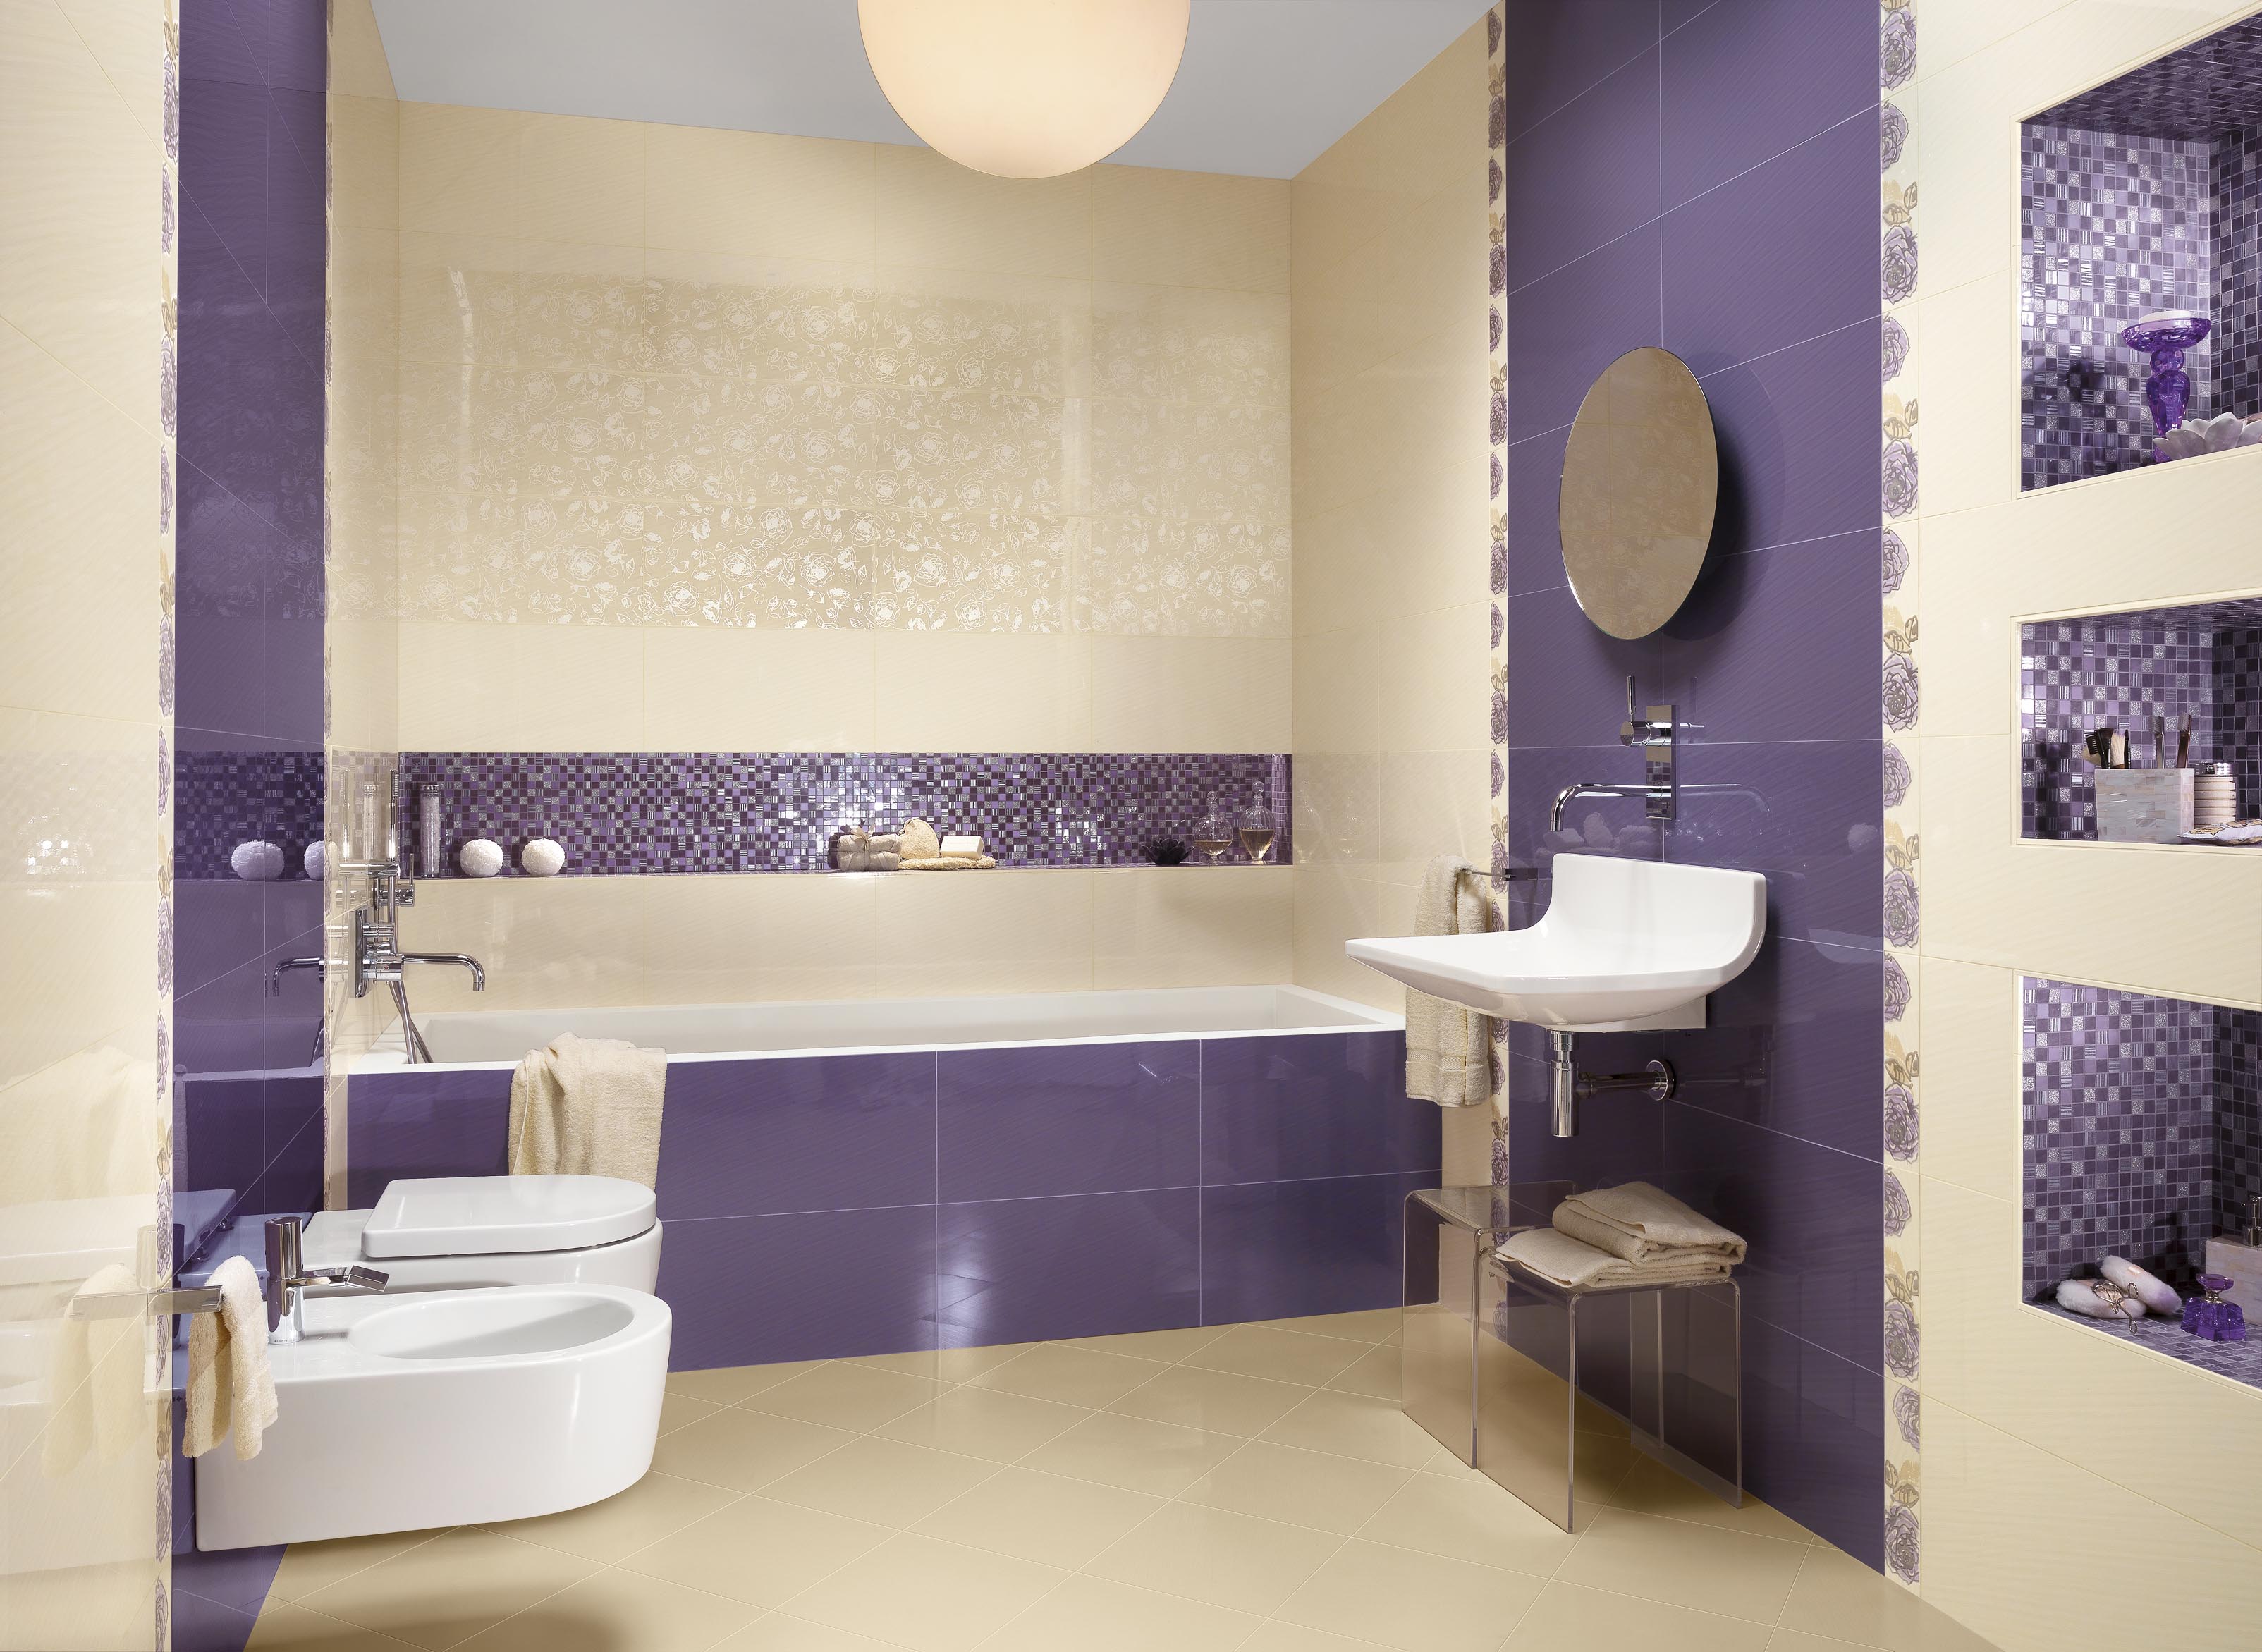 Дизайн ванной комнаты с мозаикой фото » Картинки и фотографии дизайна .